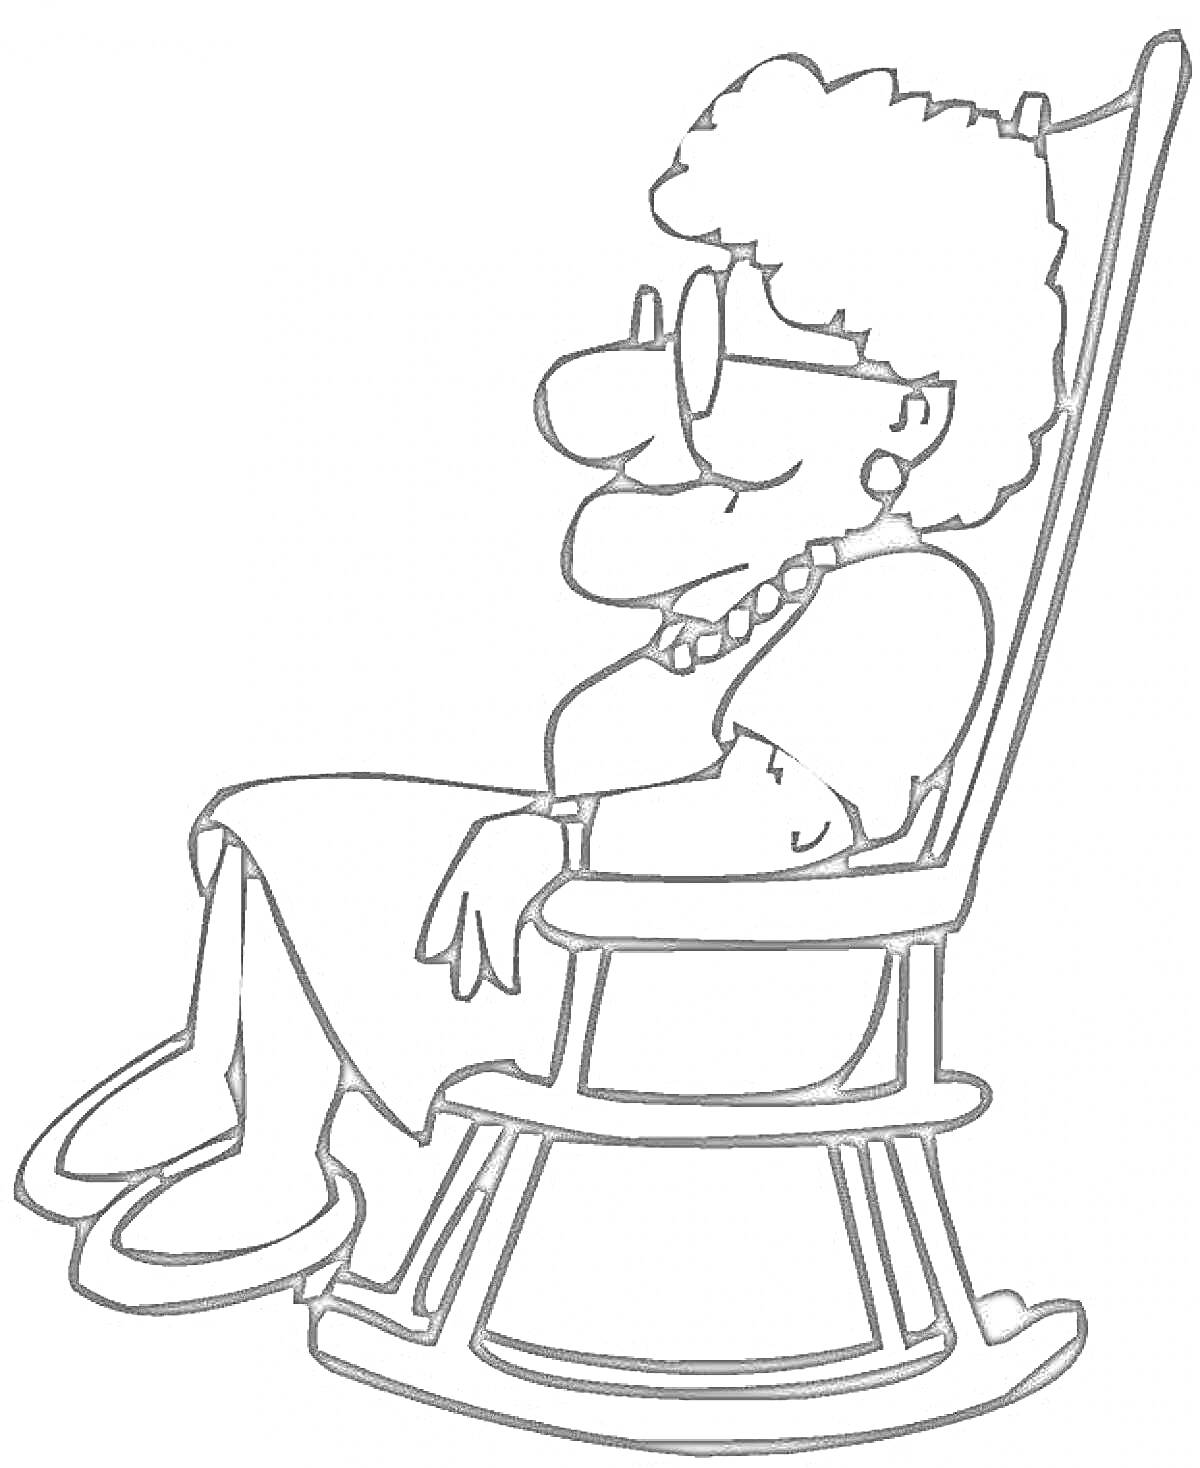 Бабушка в кресле-качалке с очками и ожерельем